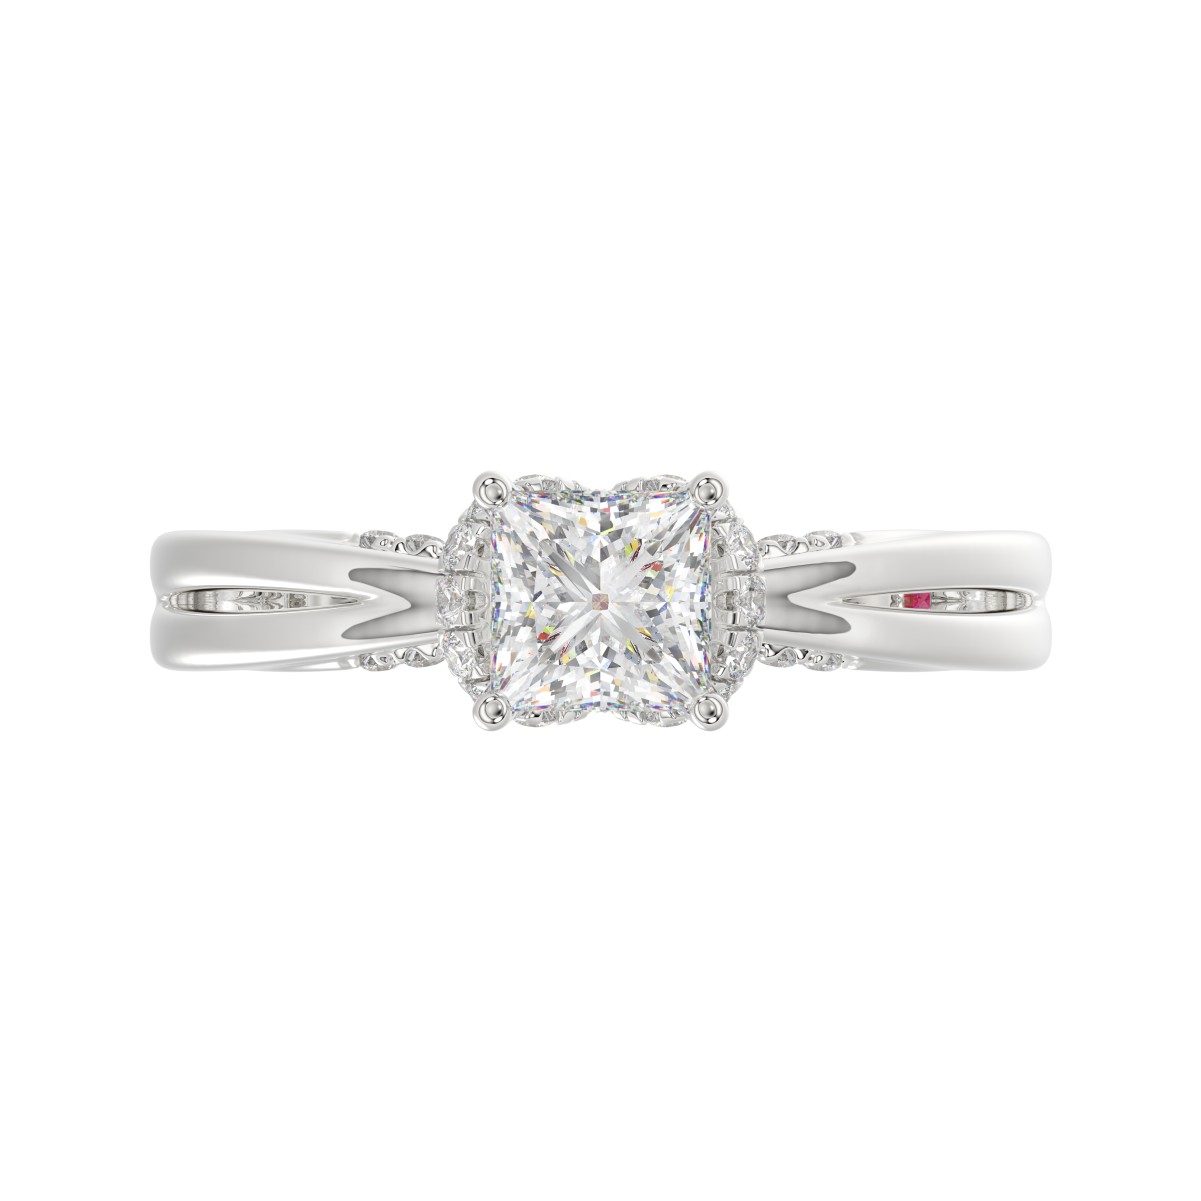 18K WHITE GOLD 7/8CT ROUND/PRINCESS DIAMOND LADIES RING( CENTER STONE PRINCESS DIAMOND 5/8 CT)